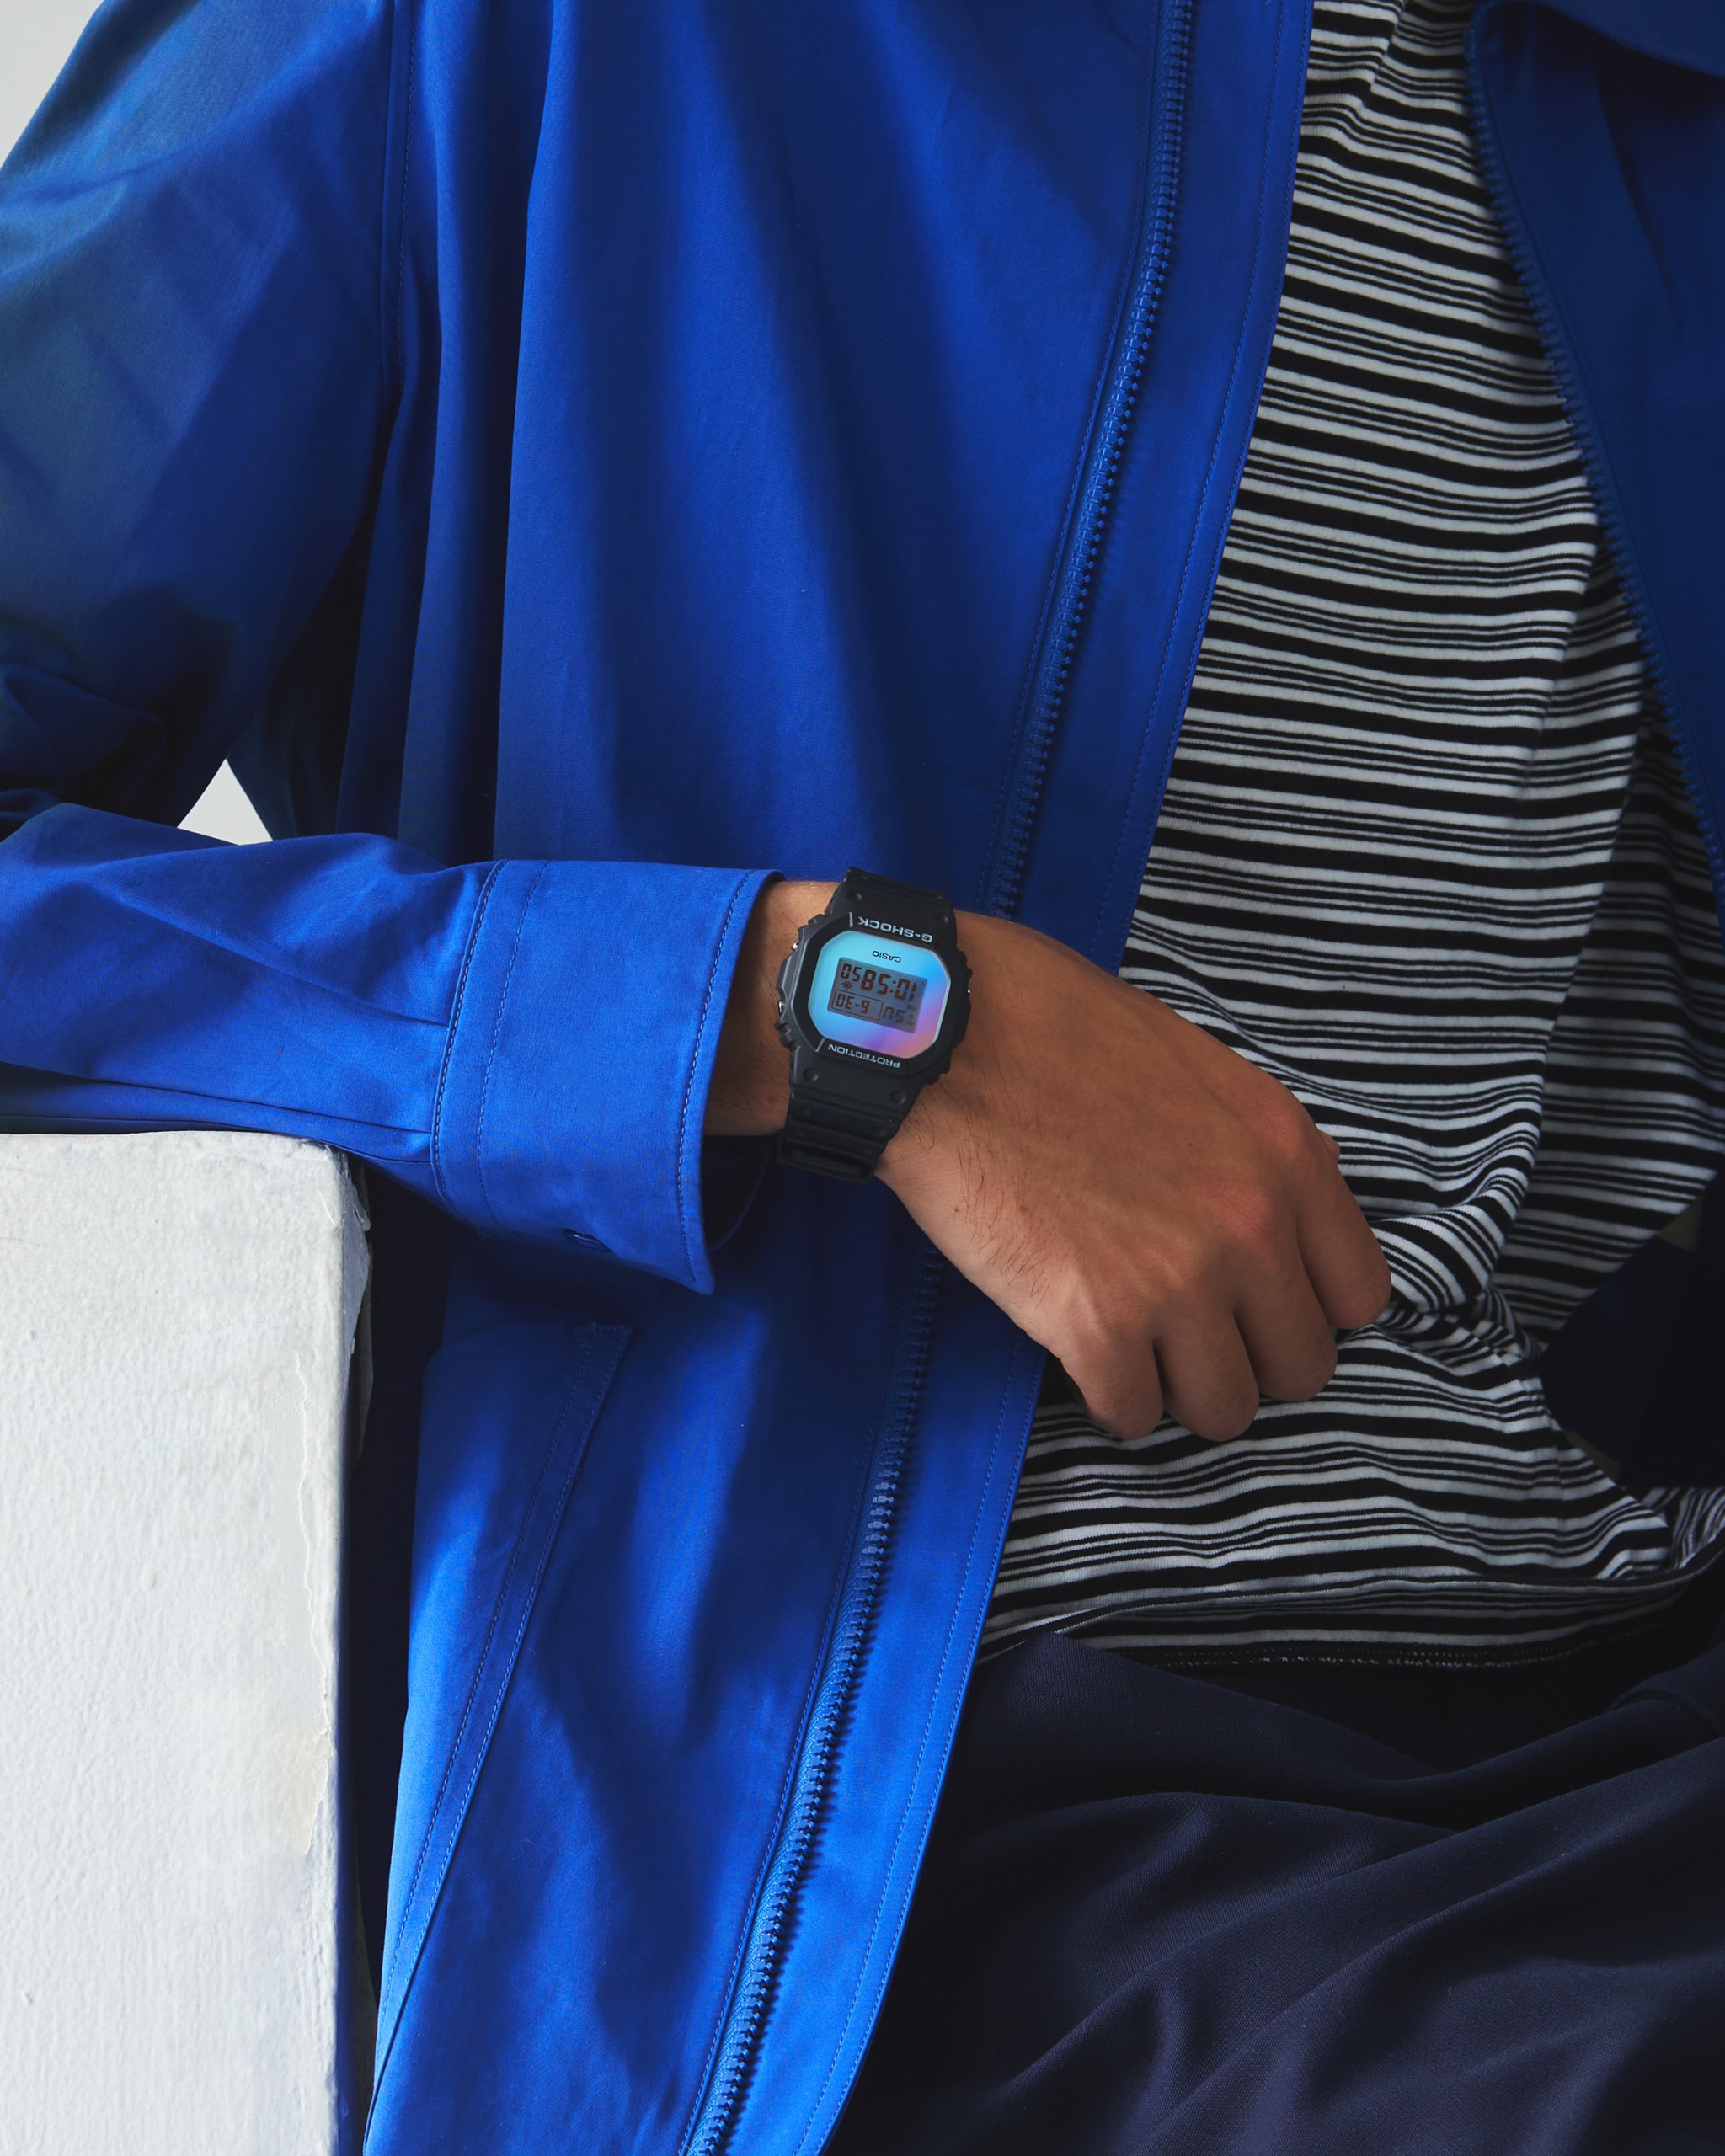 G-SHOCK 推出五款全新彩虹系列腕表